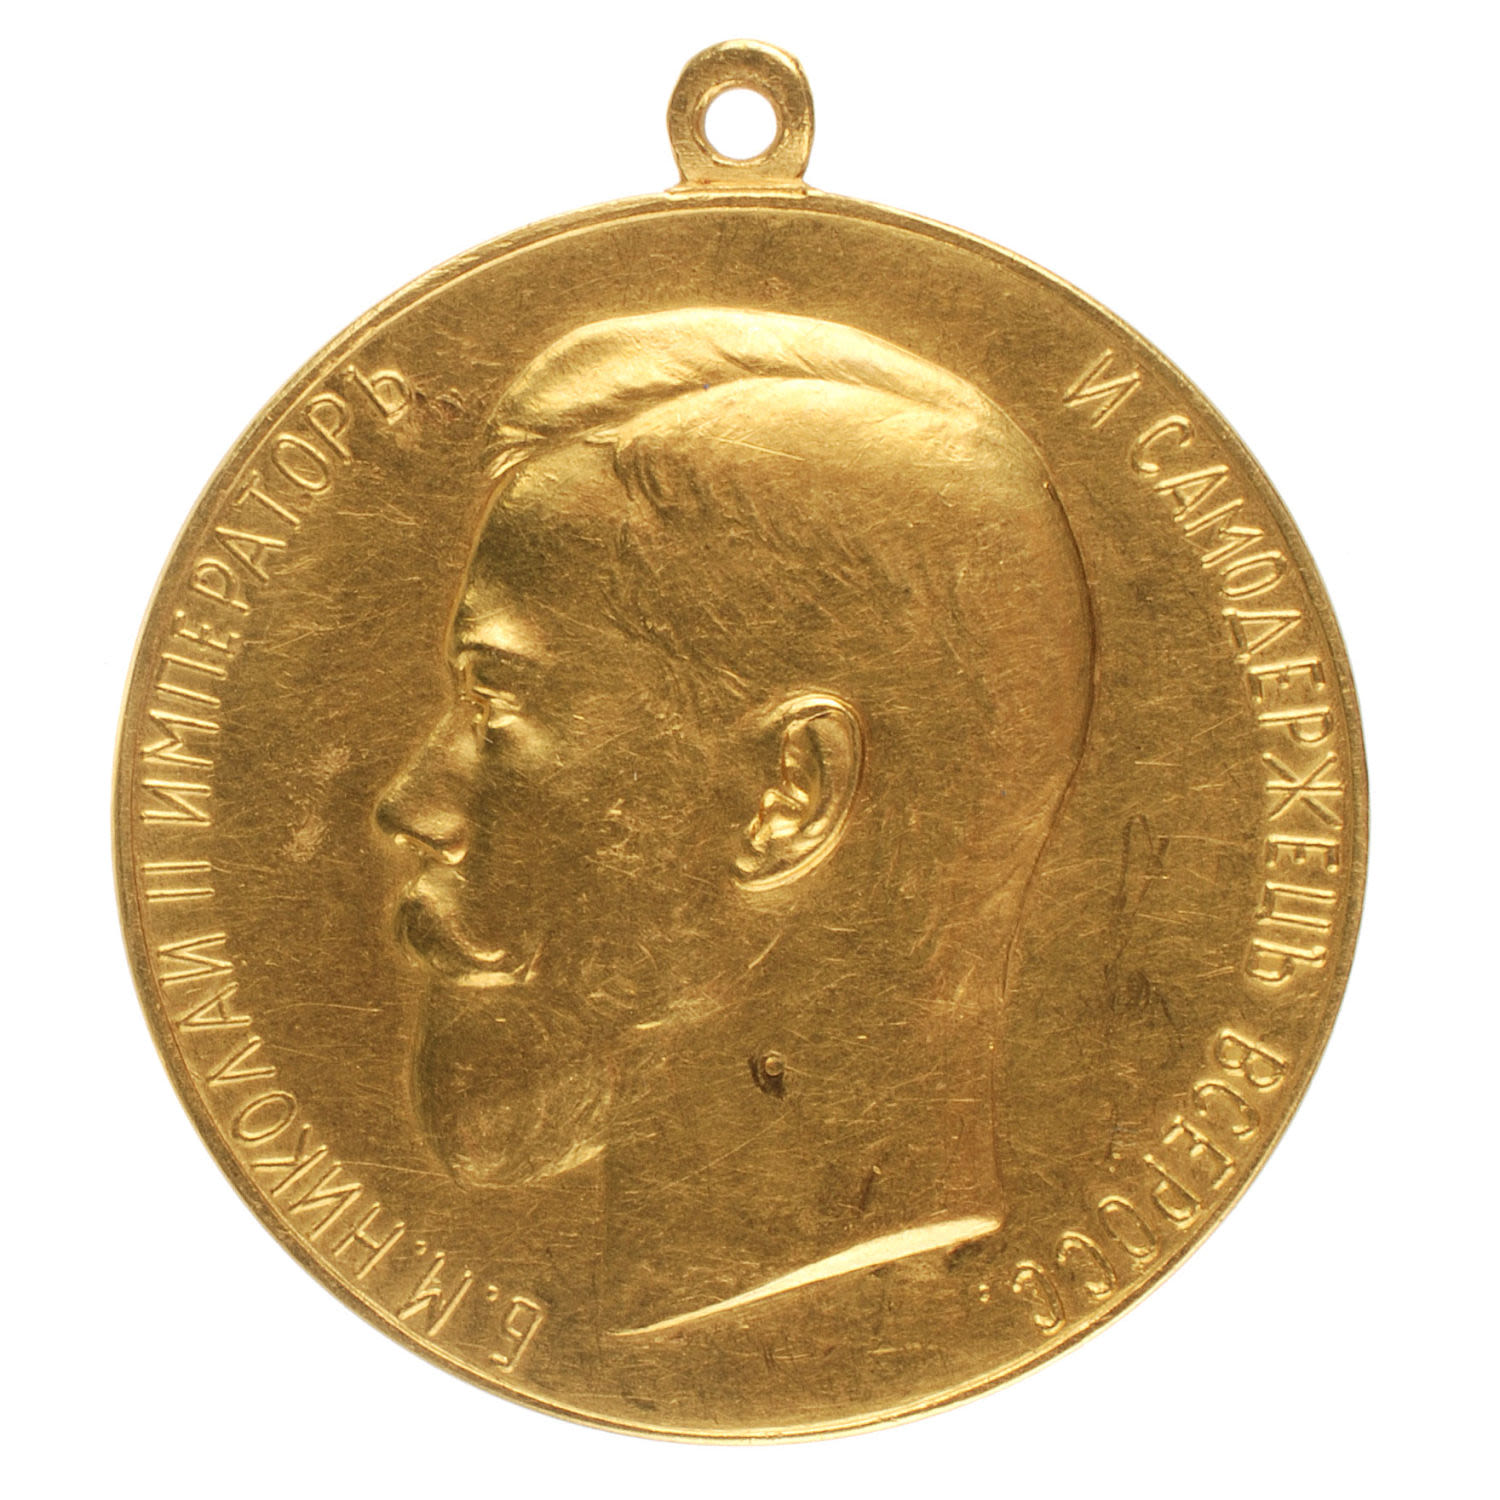 Медаль "За Усердие" с портретом Императора Николая II (образца 1895 г). Шейная, 51 мм. Золото.